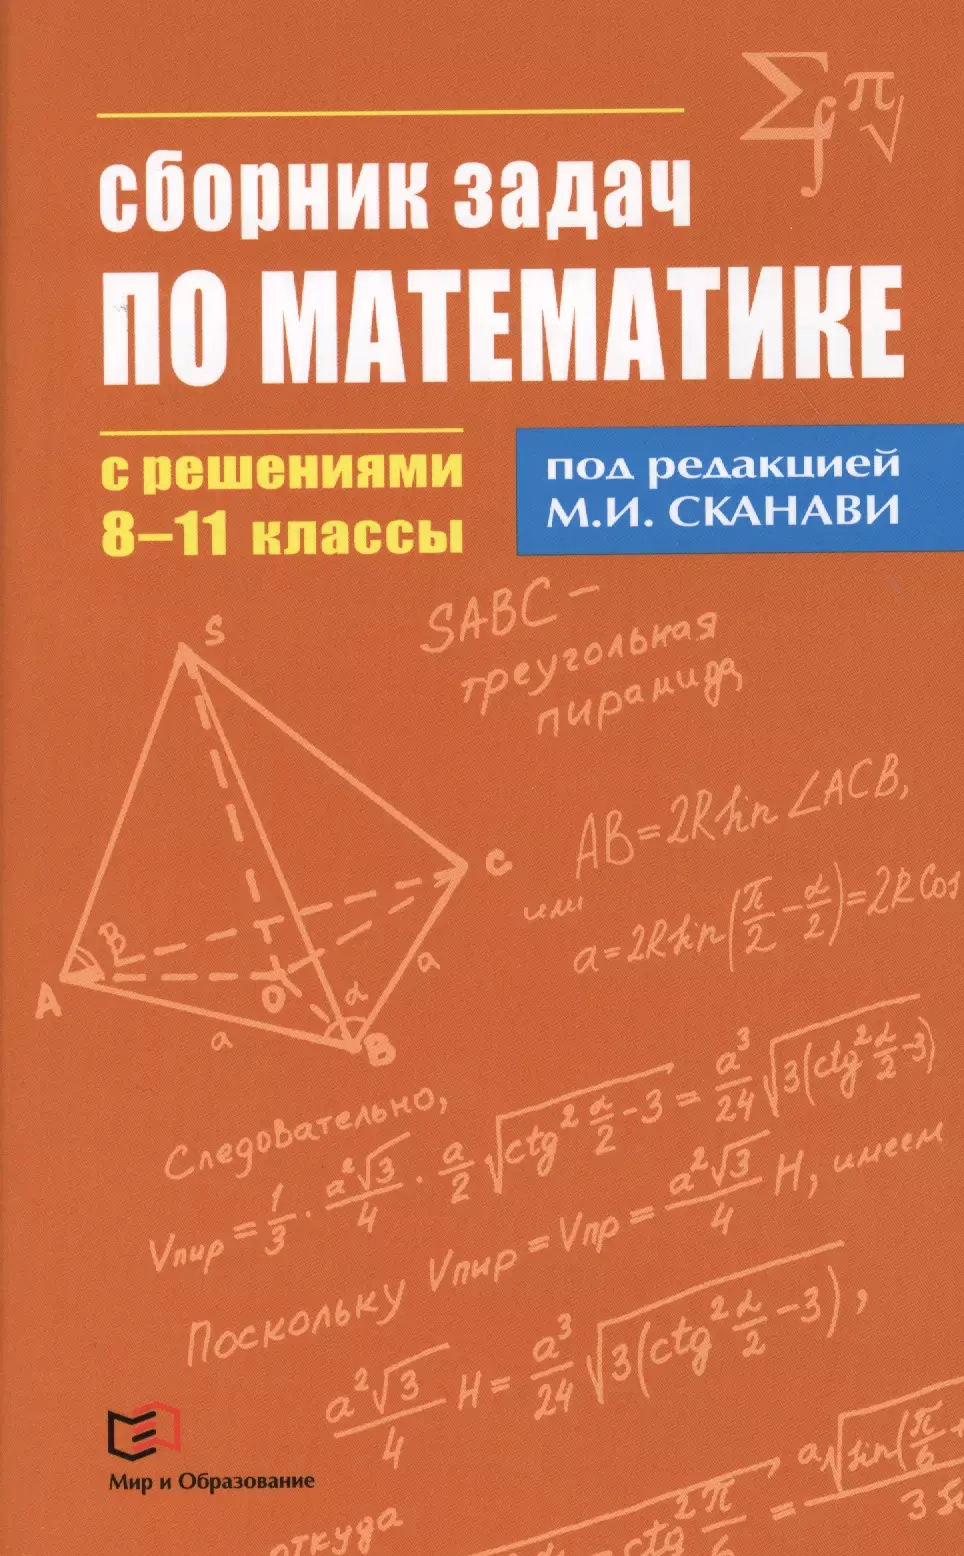 Сканави Марк Иванович - Сборник задач по математике с решениями  8 - 11 классы